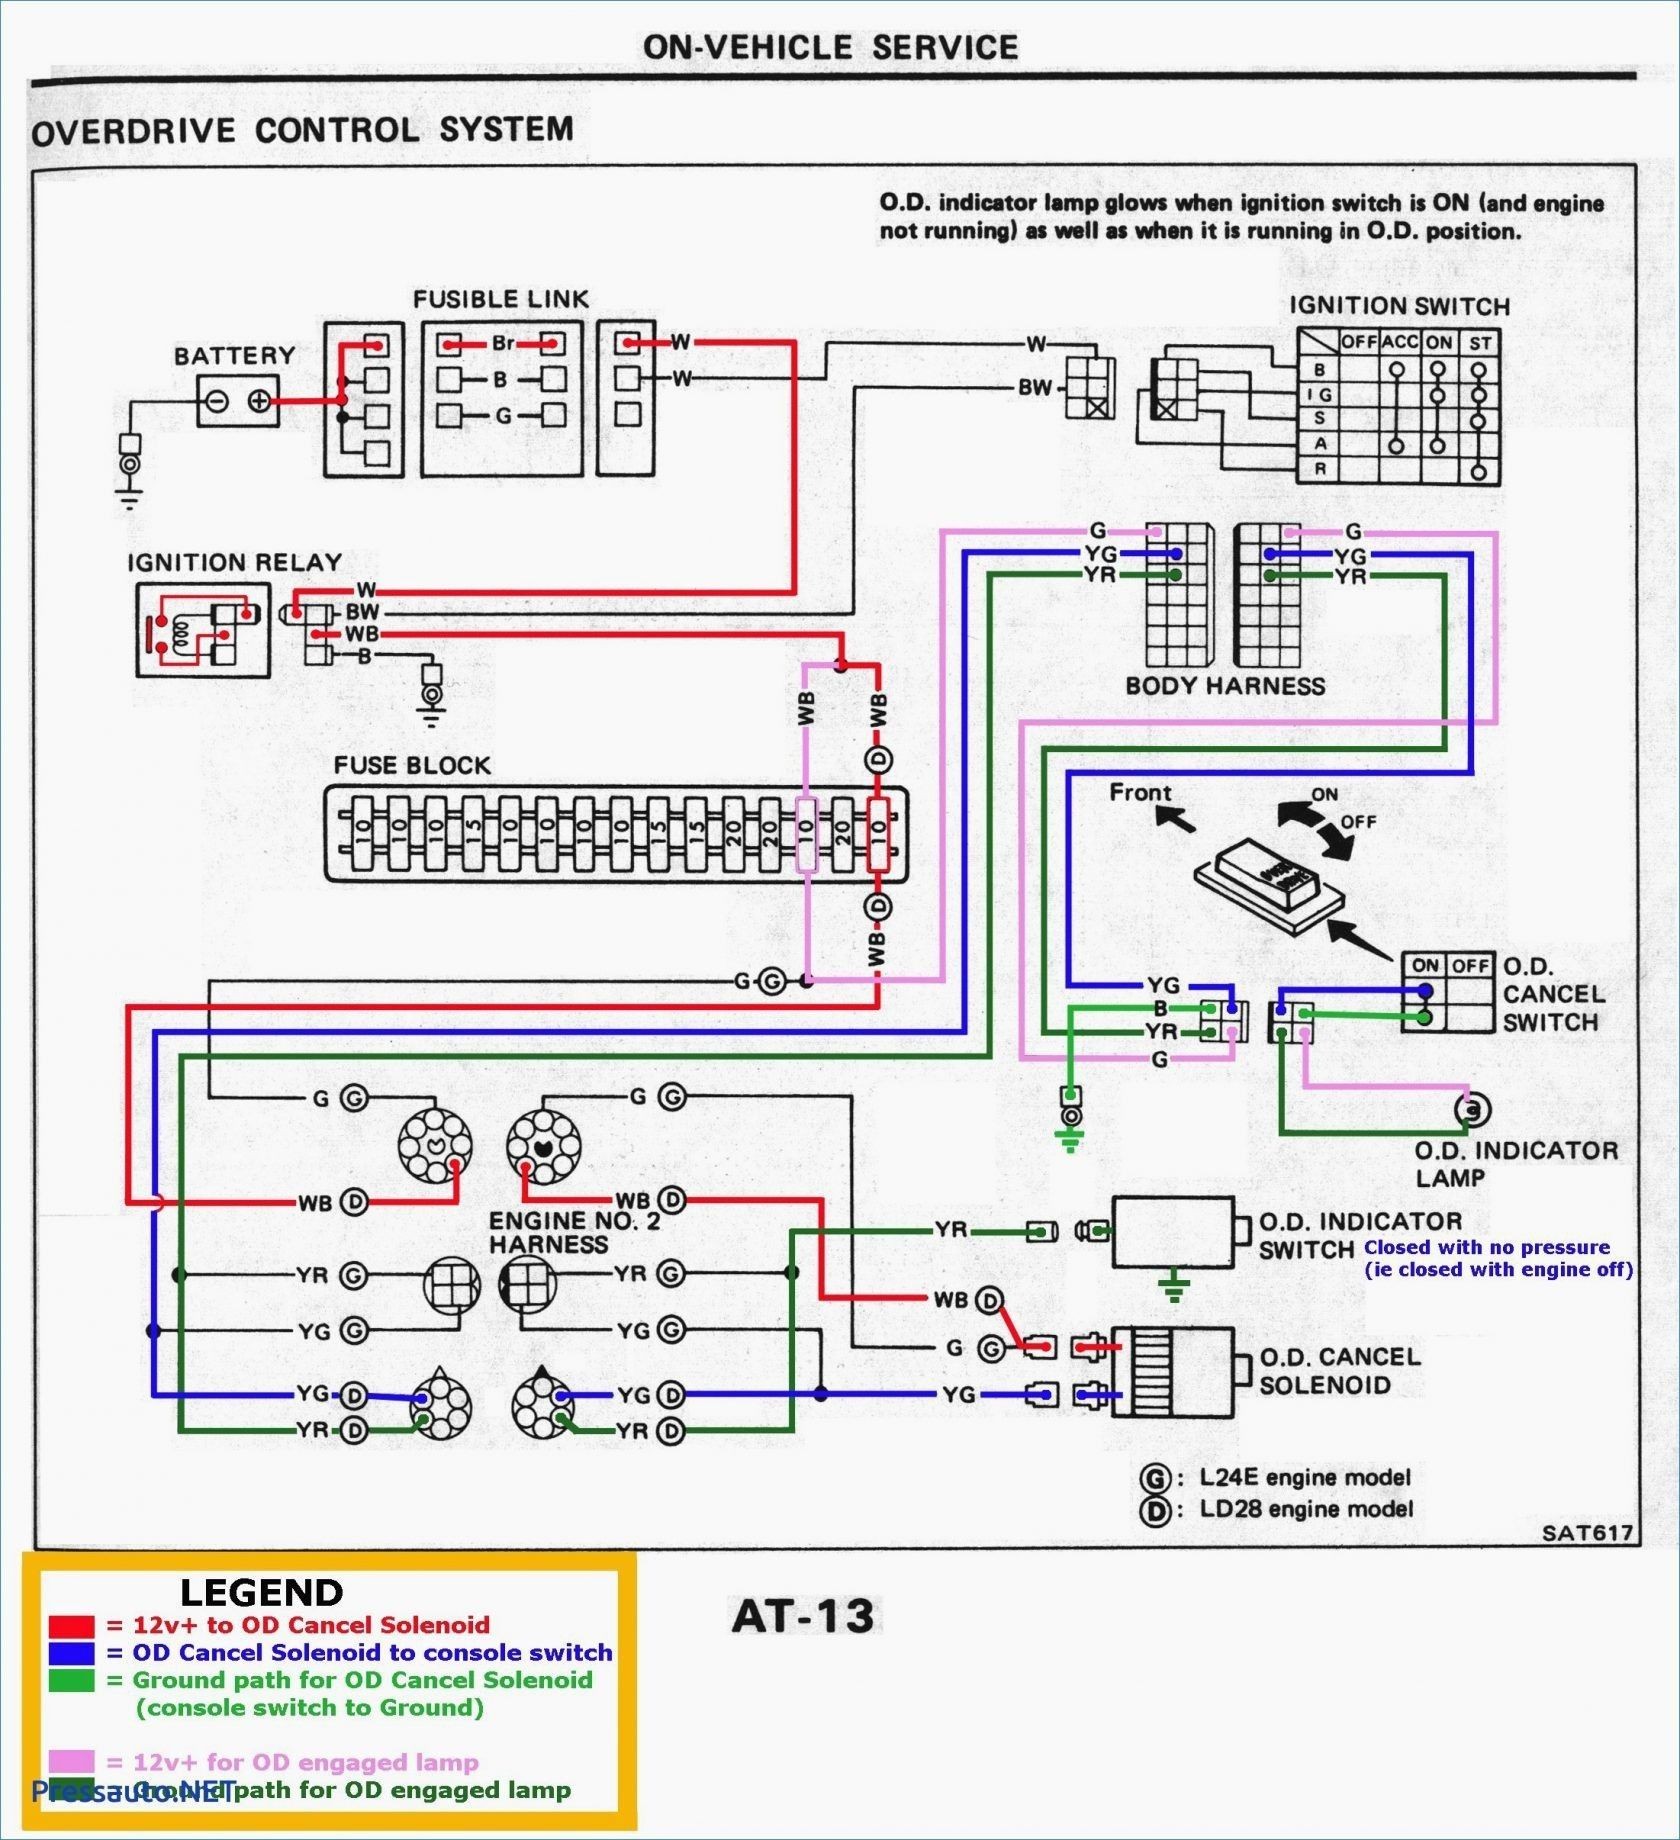 Engine Wiring Diagram Audi A2 Petrol Engine New Panasonic Inverter Wiring Diagram Of Engine Wiring Diagram Audi A2 Petrol Engine